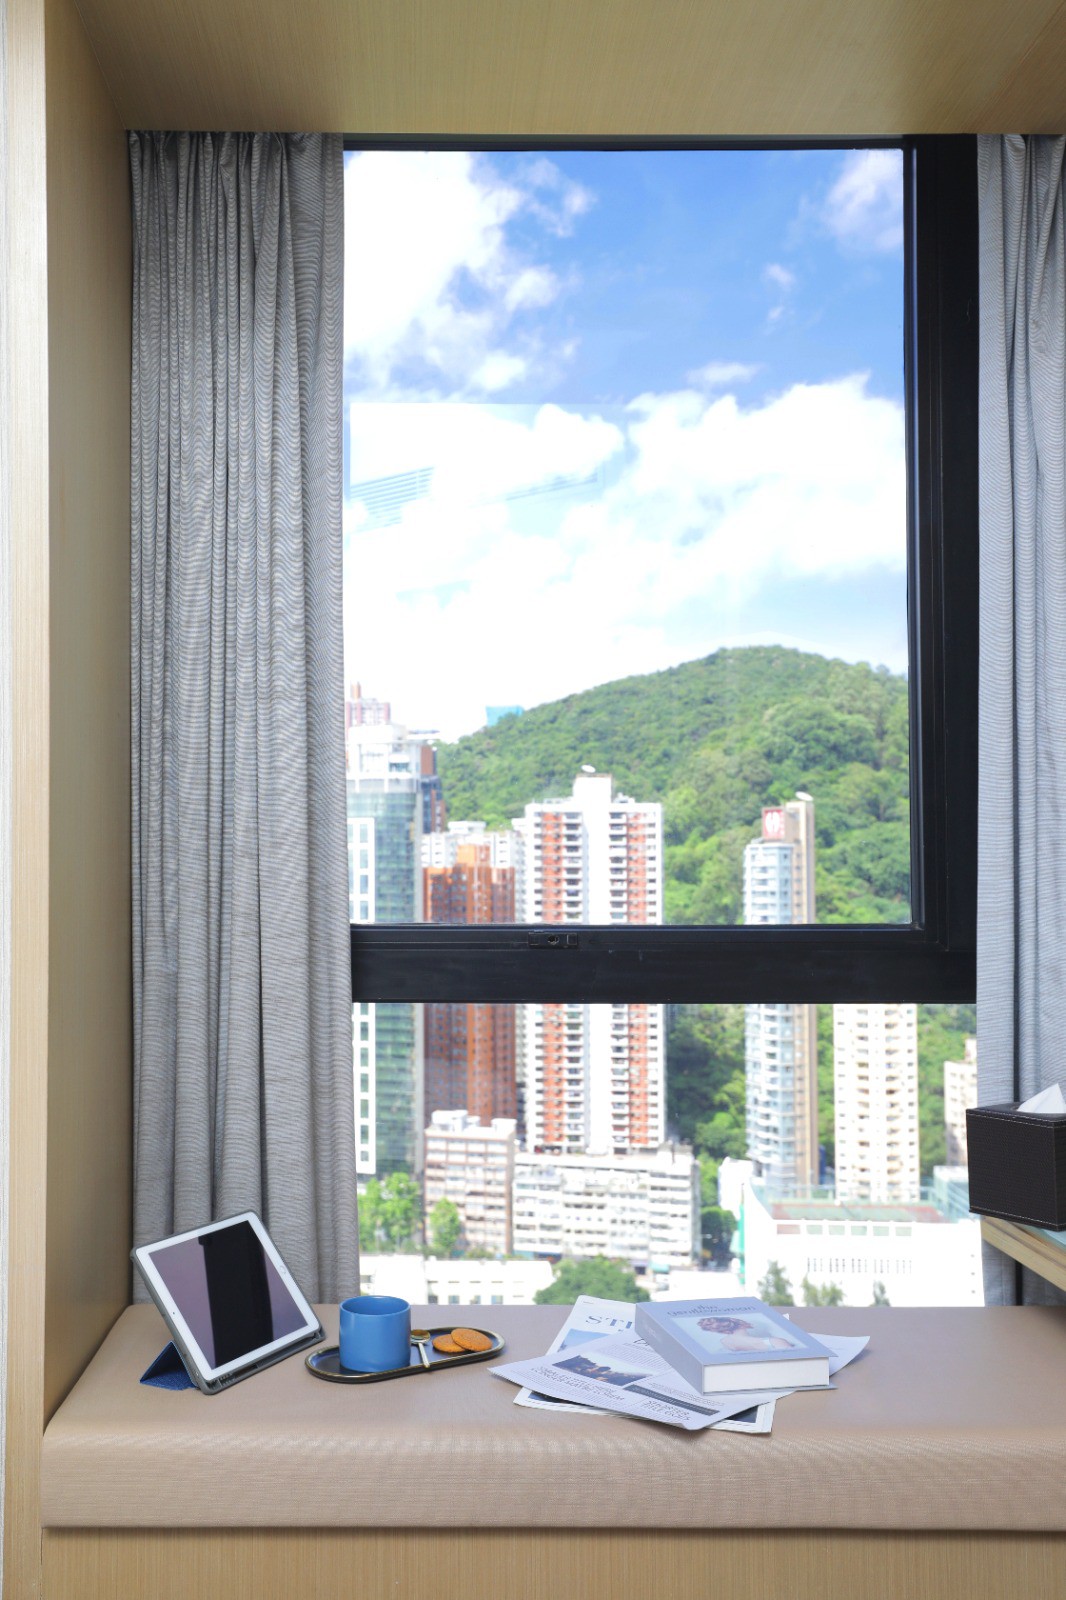 Metaplace 尊貴城景雙人房#4 香港銅鑼灣名迪港島酒店